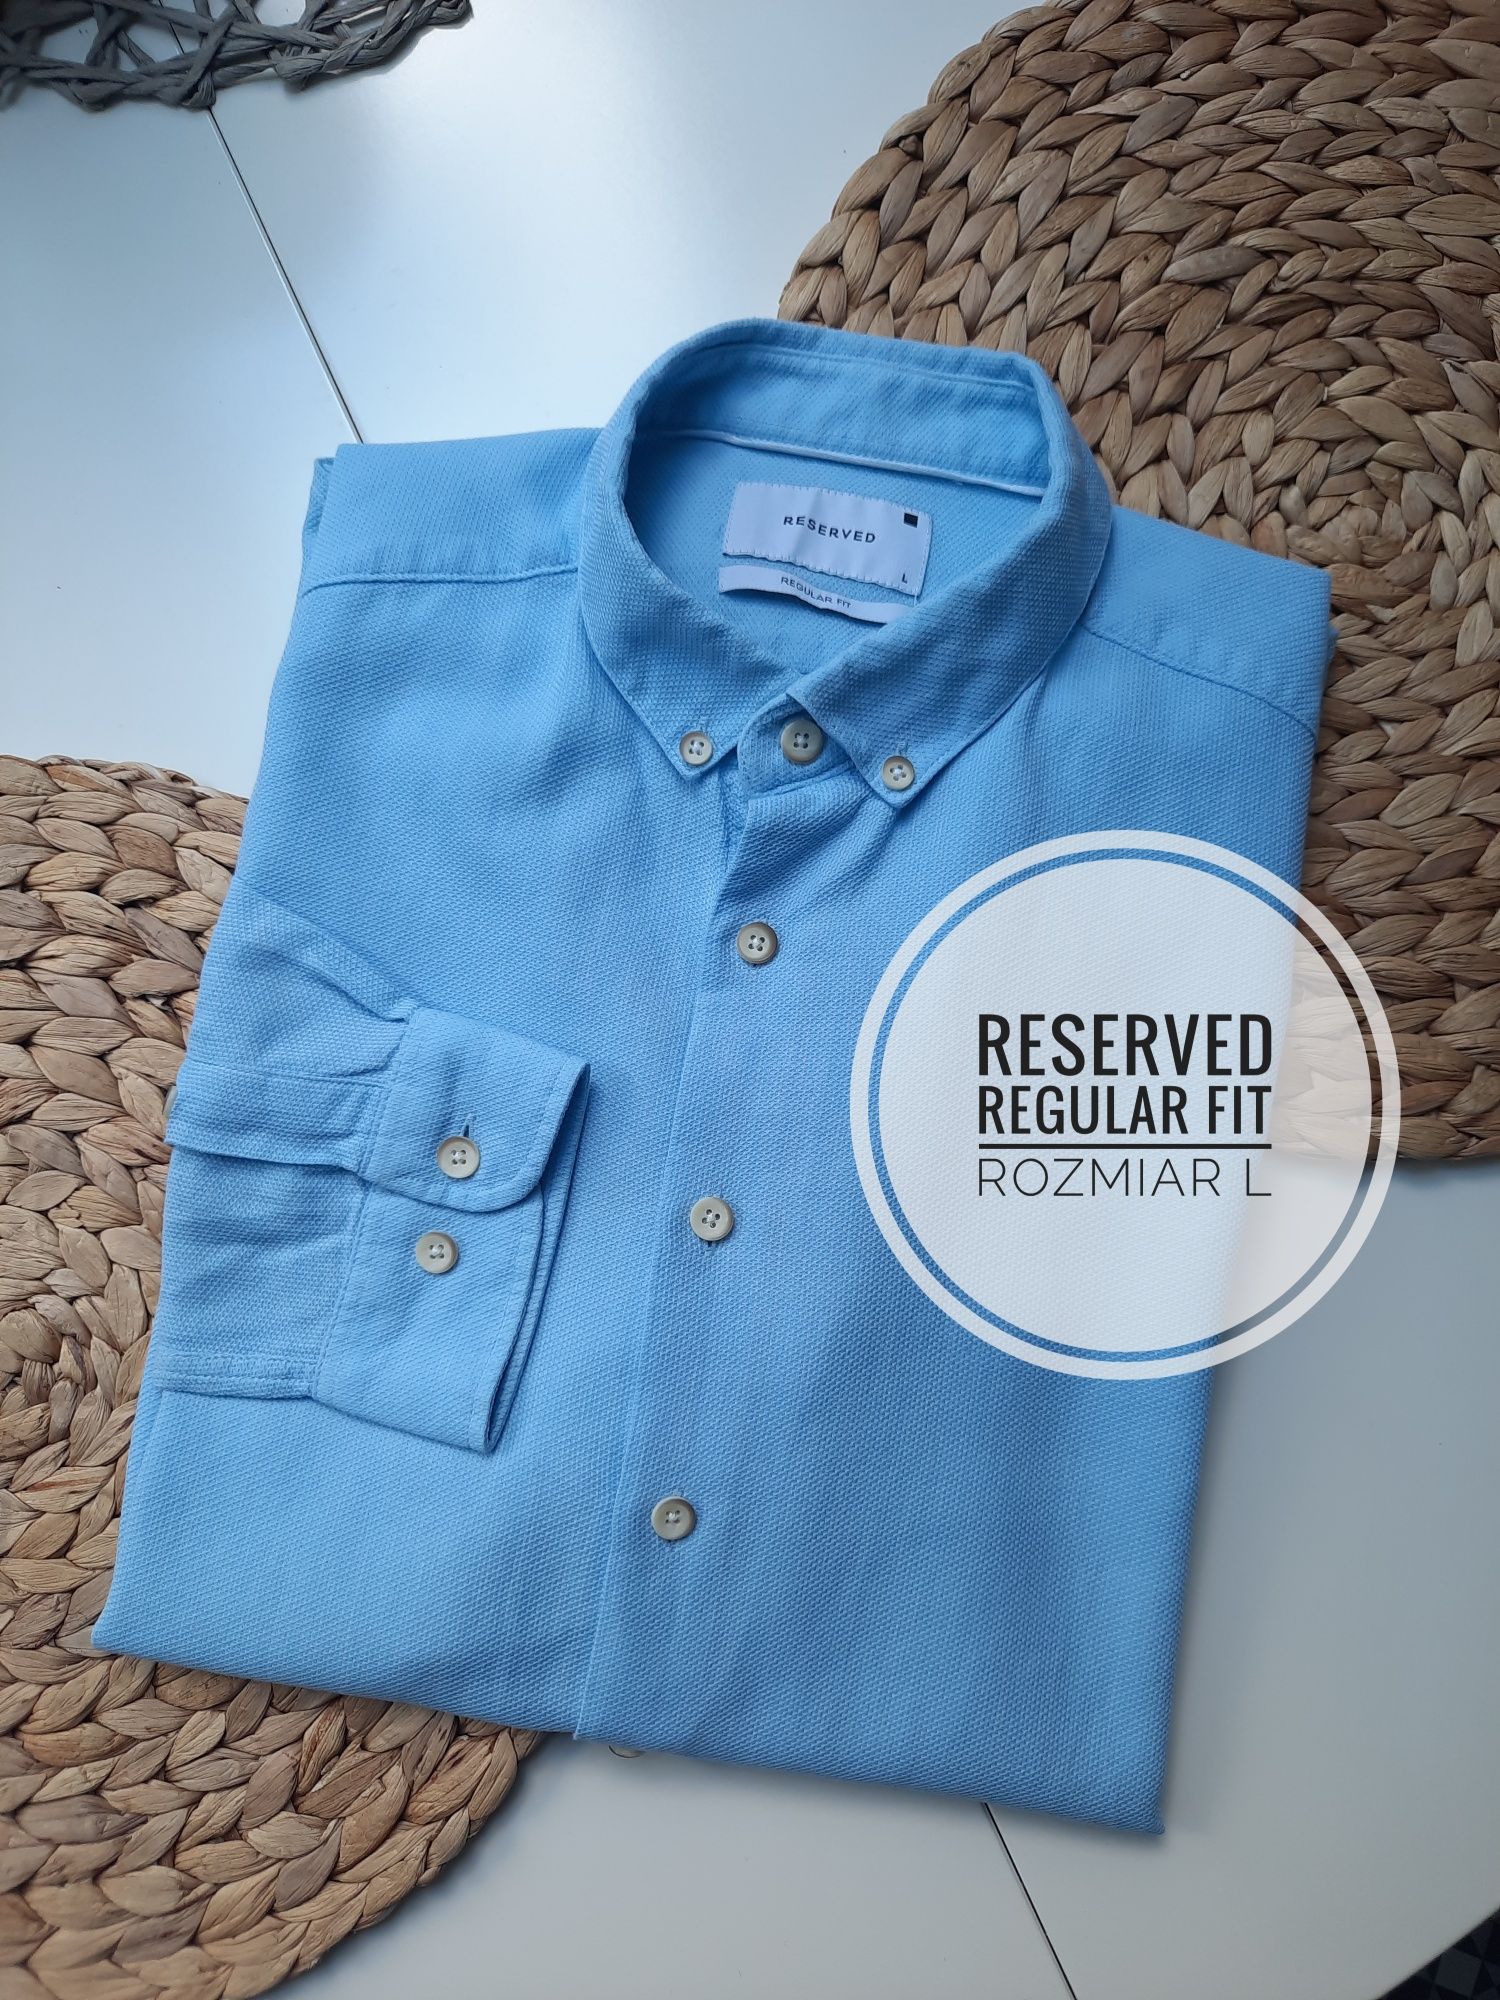 Koszula męska błękitna casual Reserved regular fit bawełna długi rękaw